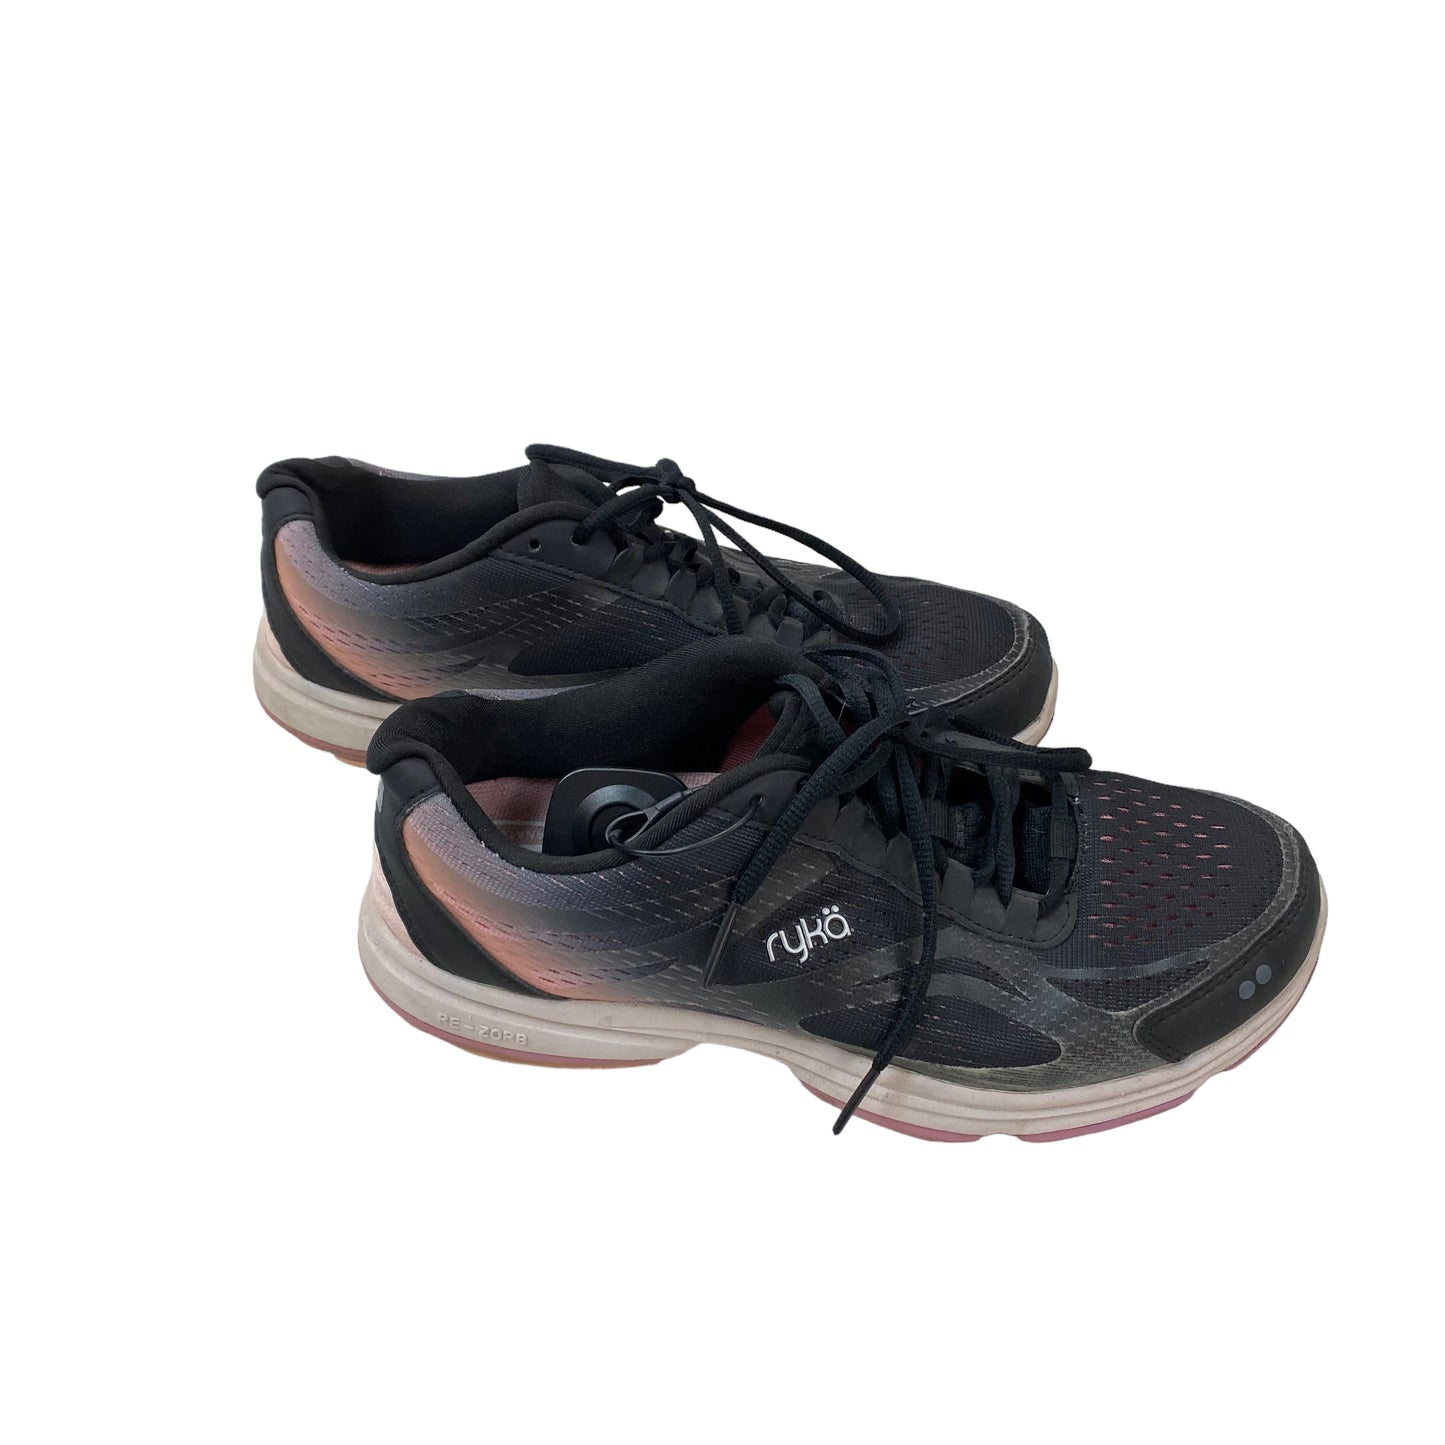 Black Shoes Athletic Ryka, Size 8